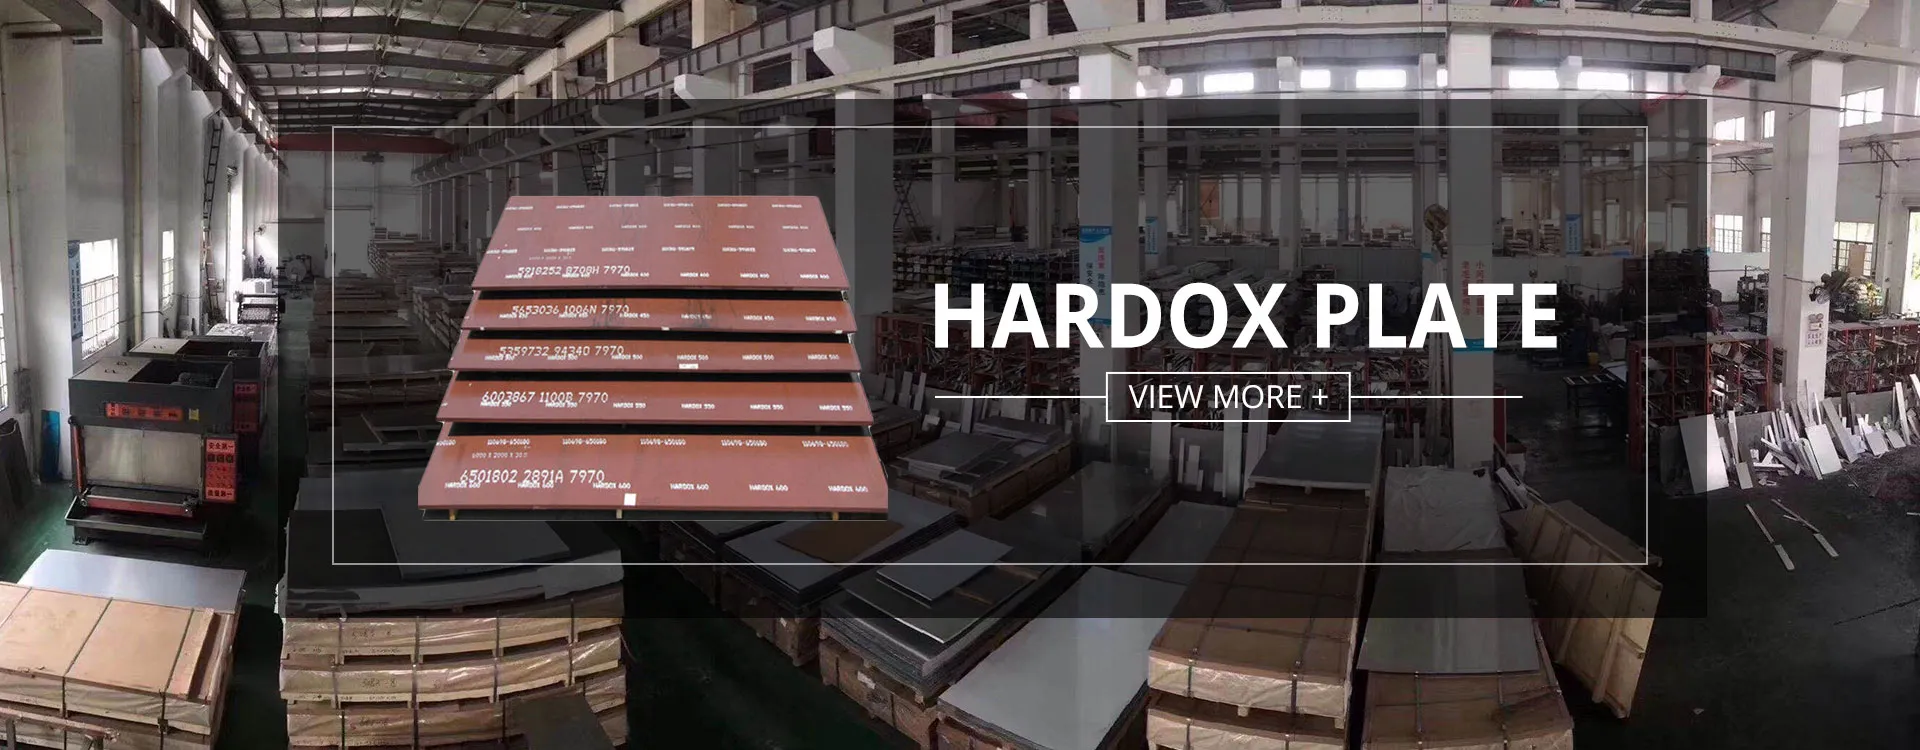 Hardox Plate